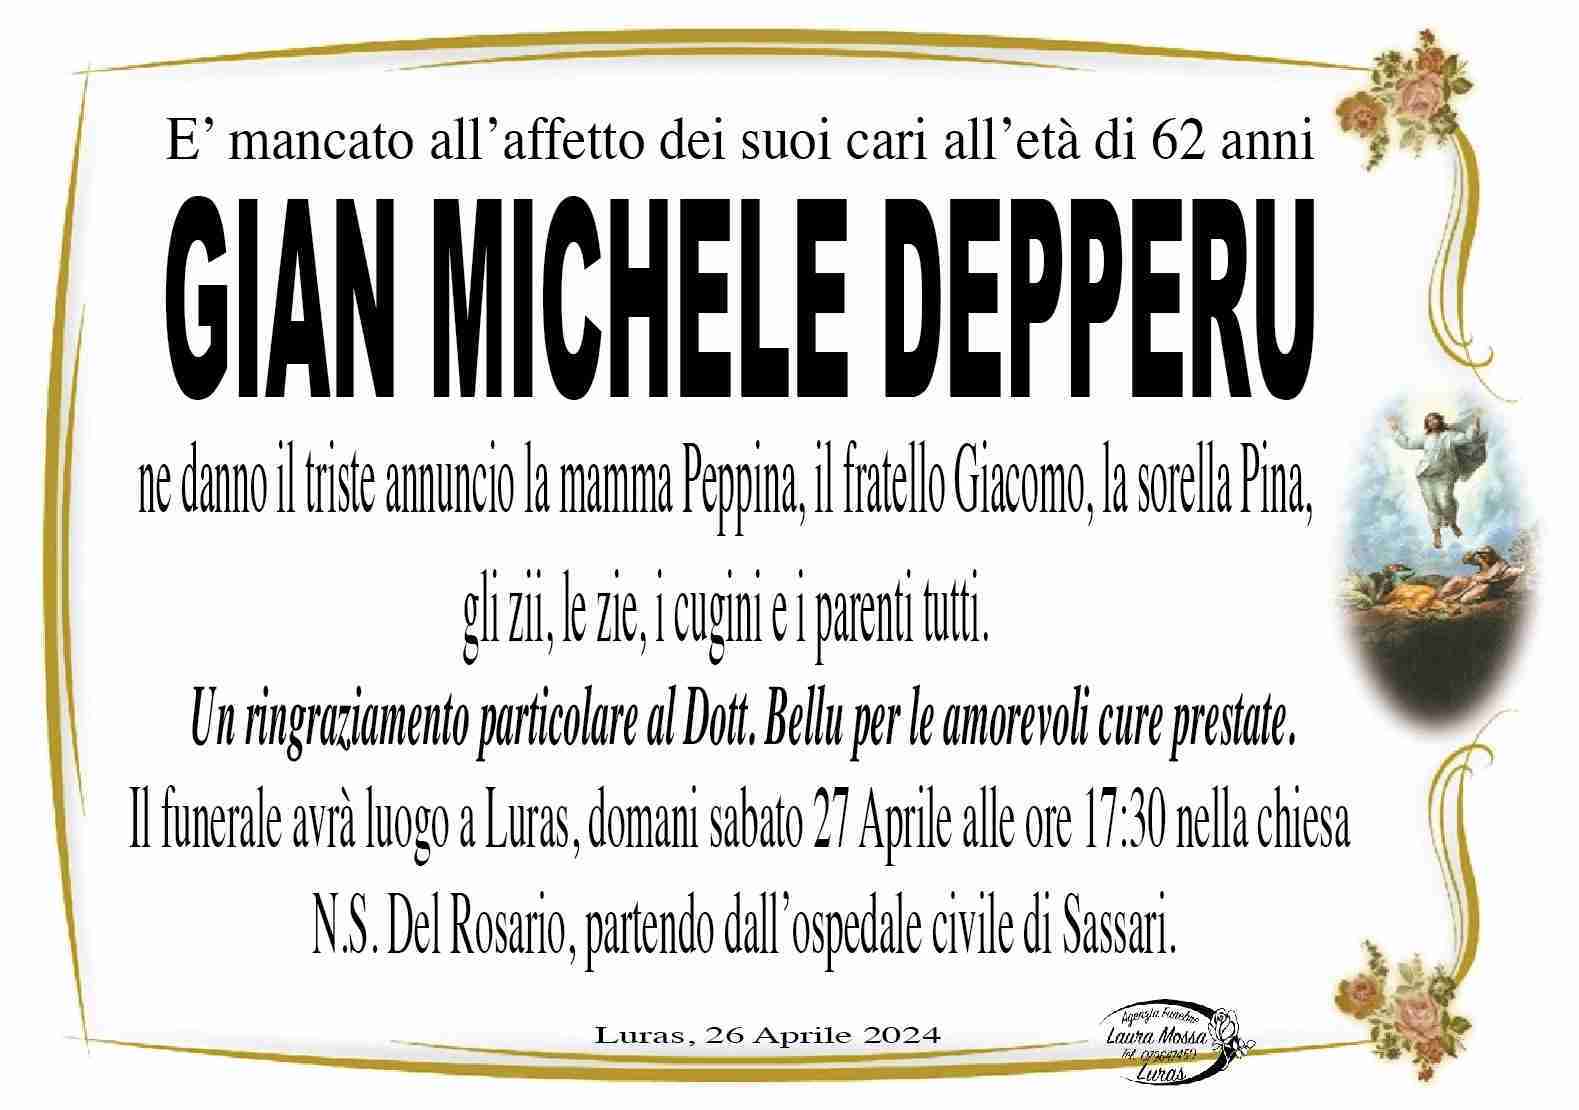 Gian Michele Depperu